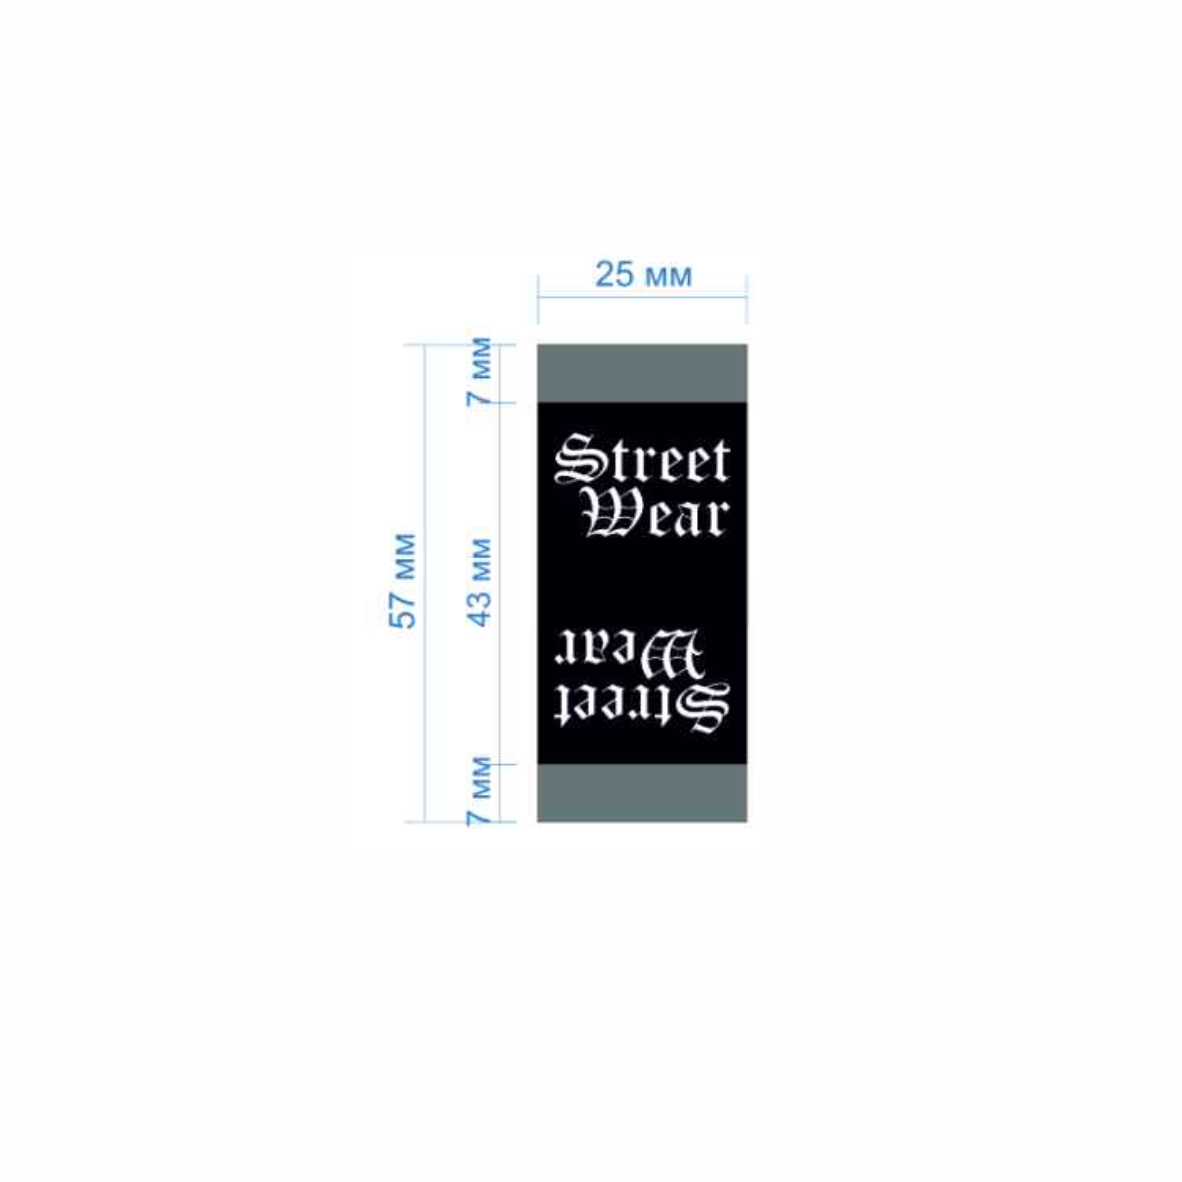 Этикетка тканевая Street wear 2,5см черная и белый лого /флажок, 70 atki/, шт. Вышивка / этикетка тканевая